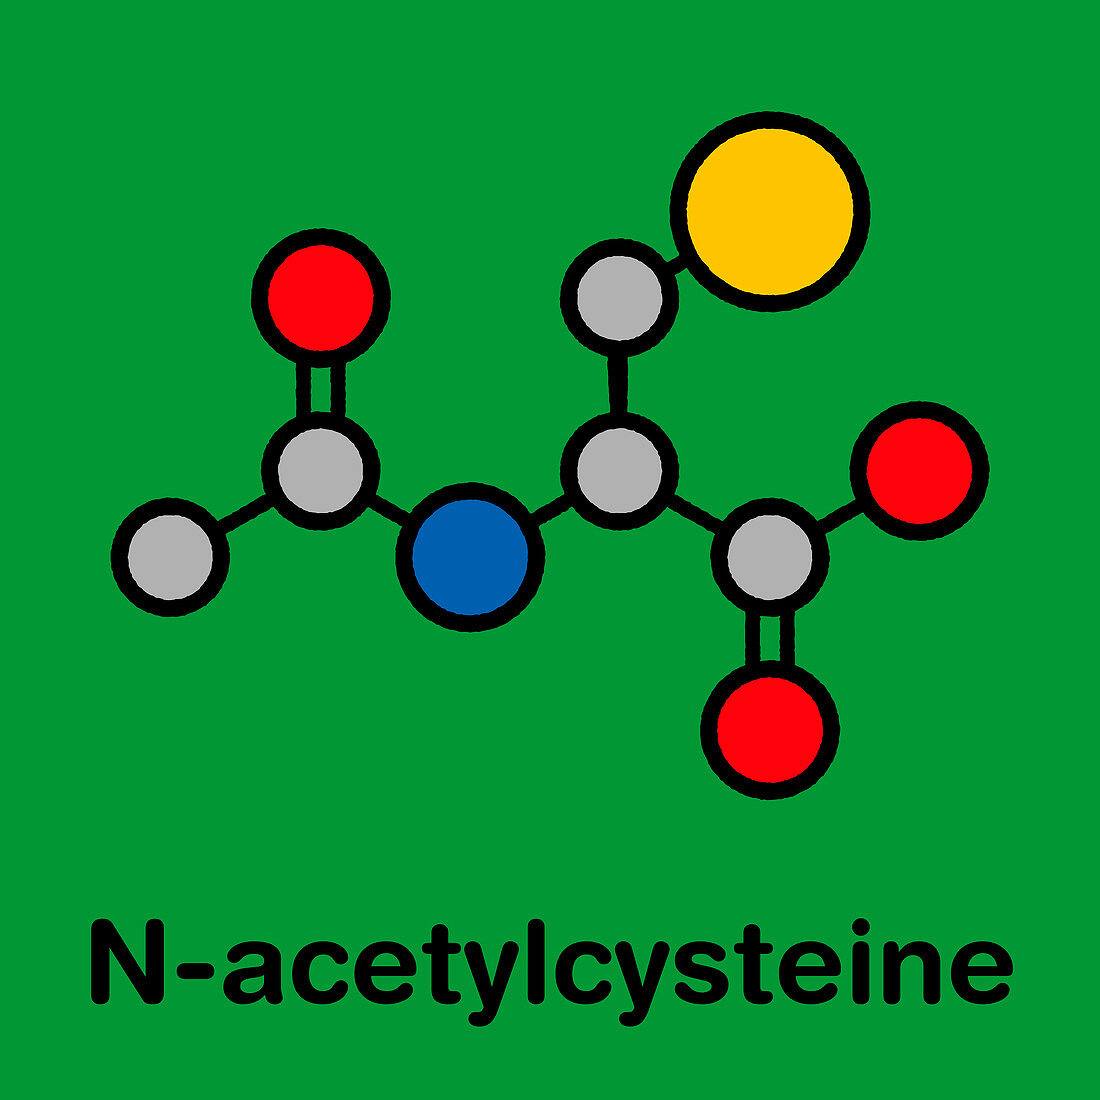 Acetylcysteine mucolytic drug, molecular model